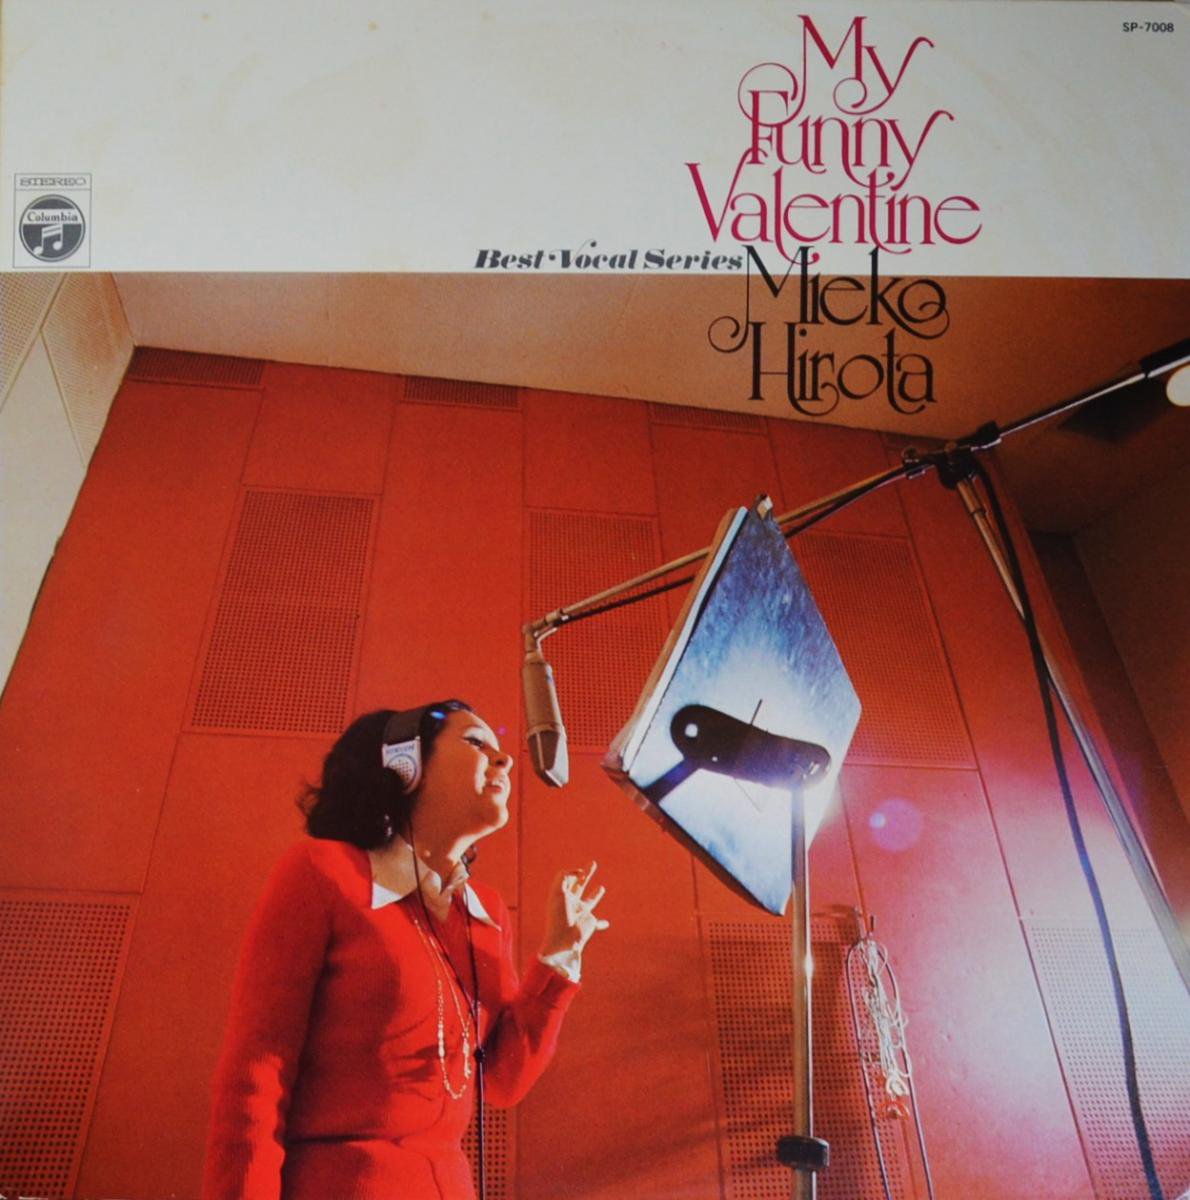 弘田三枝子 MIEKO HIROTA / マイ・ファニー・ヴァレンタイン MY FUNNY VALENTINE (LP)